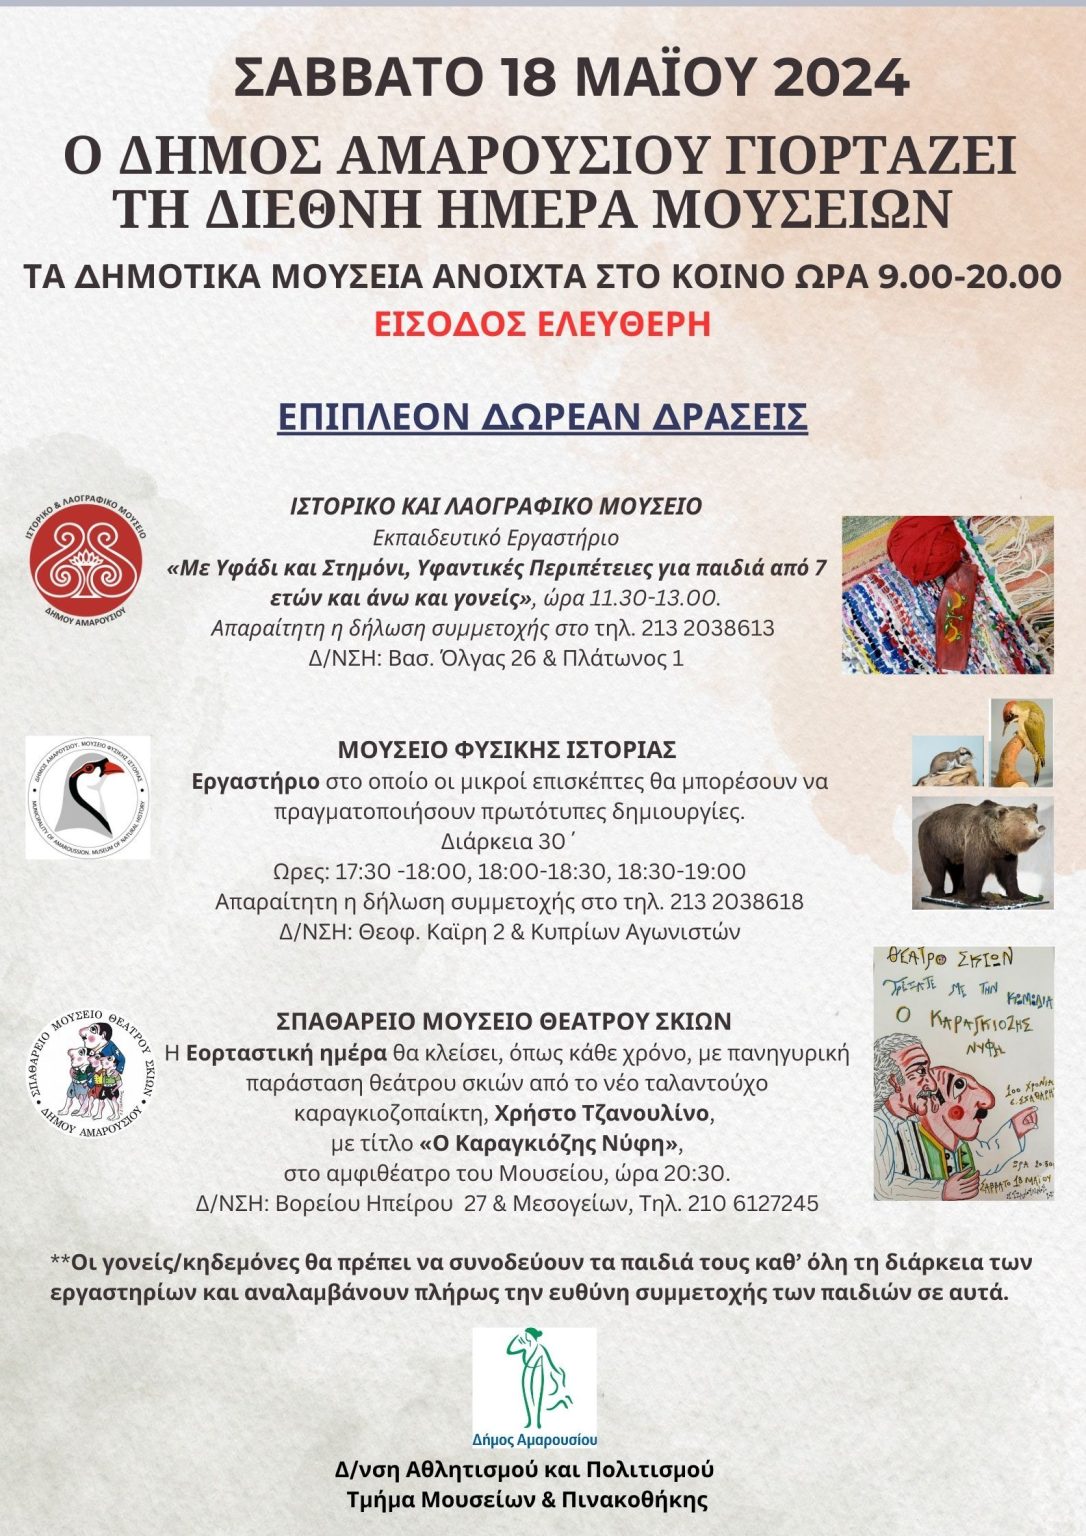 Δράσεις του Δήμου Αμαρουσίου για τον εορτασμό της Διεθνούς Ημέρας Μουσείων